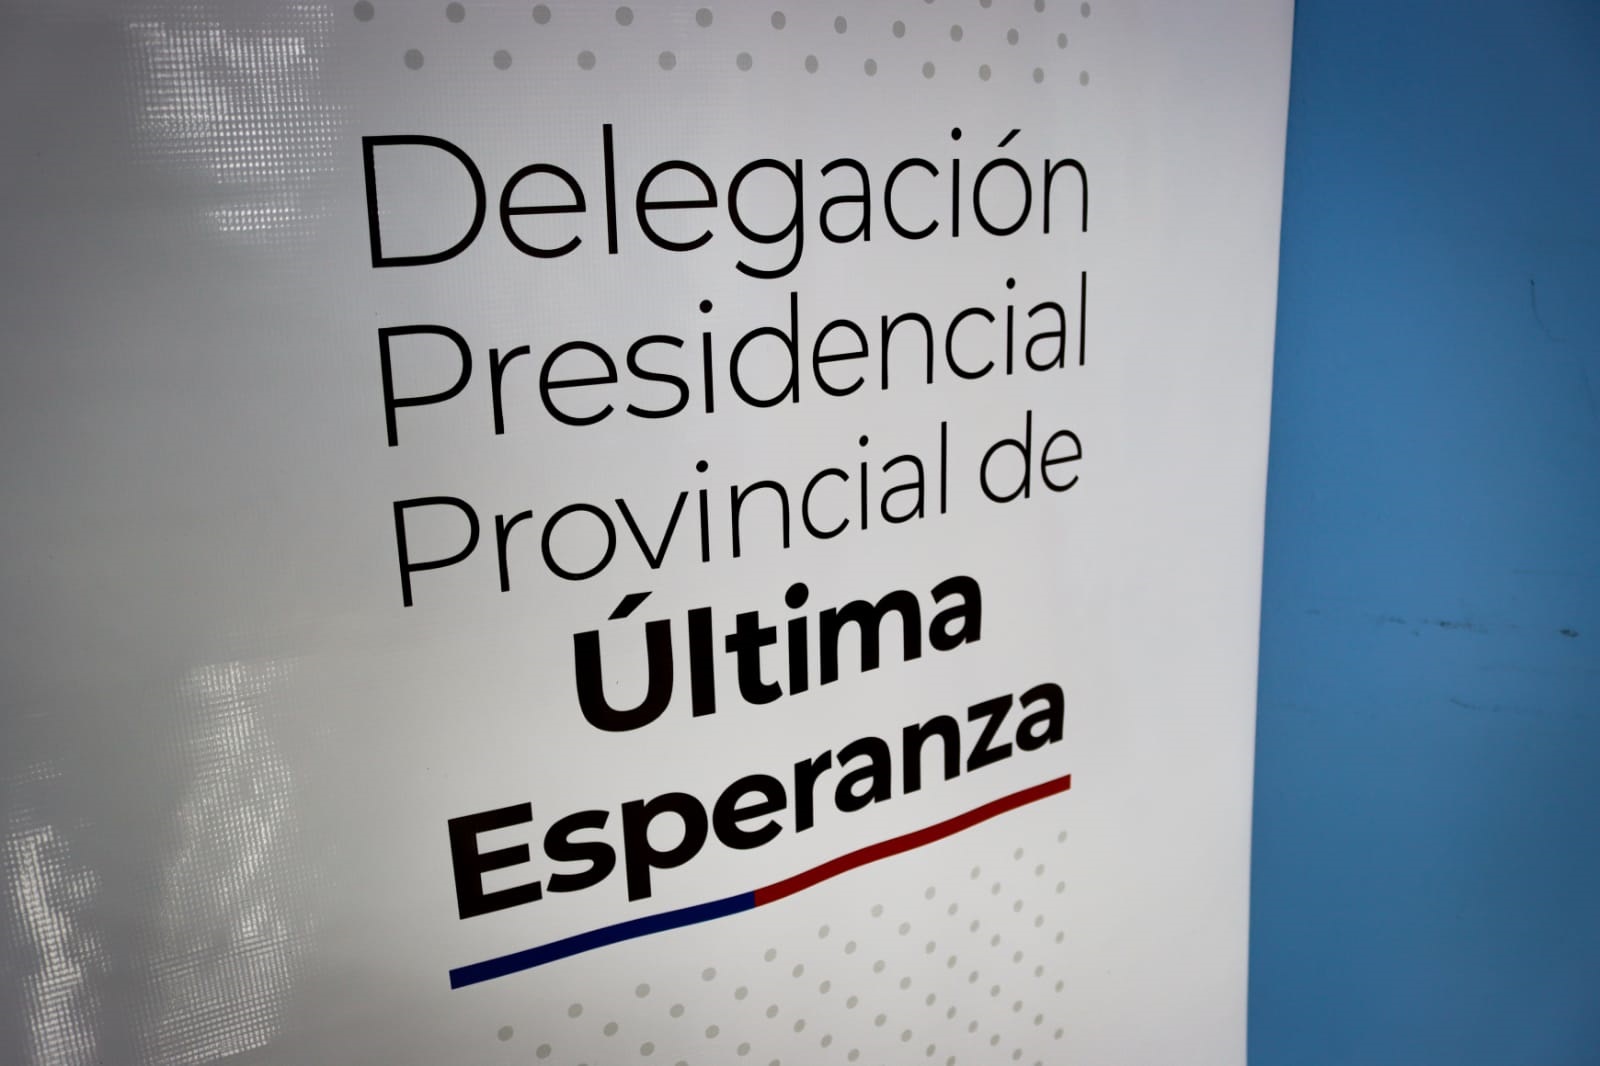 Los desafíos que asume la nueva Delegación Presidencial Provincial de Última Esperanza